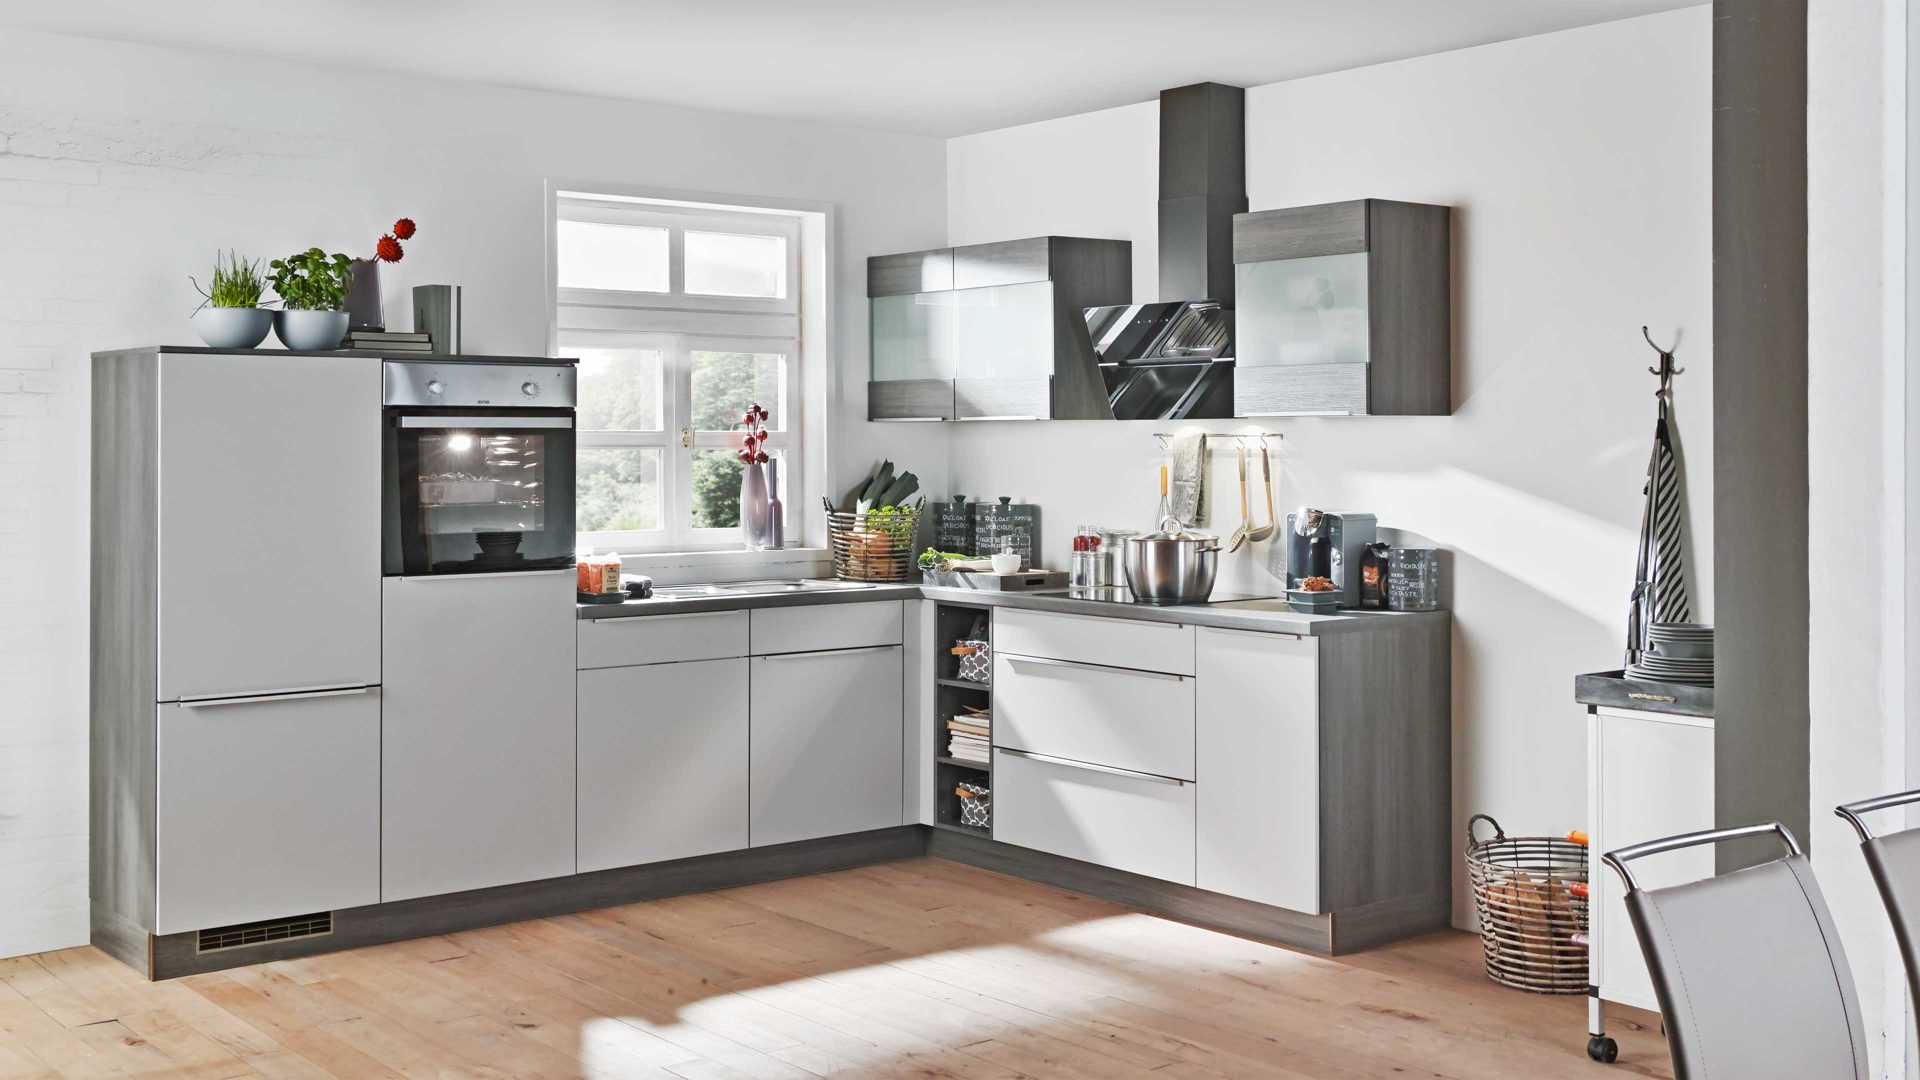 Einbauküche Express küchen aus Holz in Hellgrau EXPRESS KÜCHEN Einbauküche Win mit Geräten Hellgrau & Eiche grau - Stellfläche ca. 305 x 230 cm